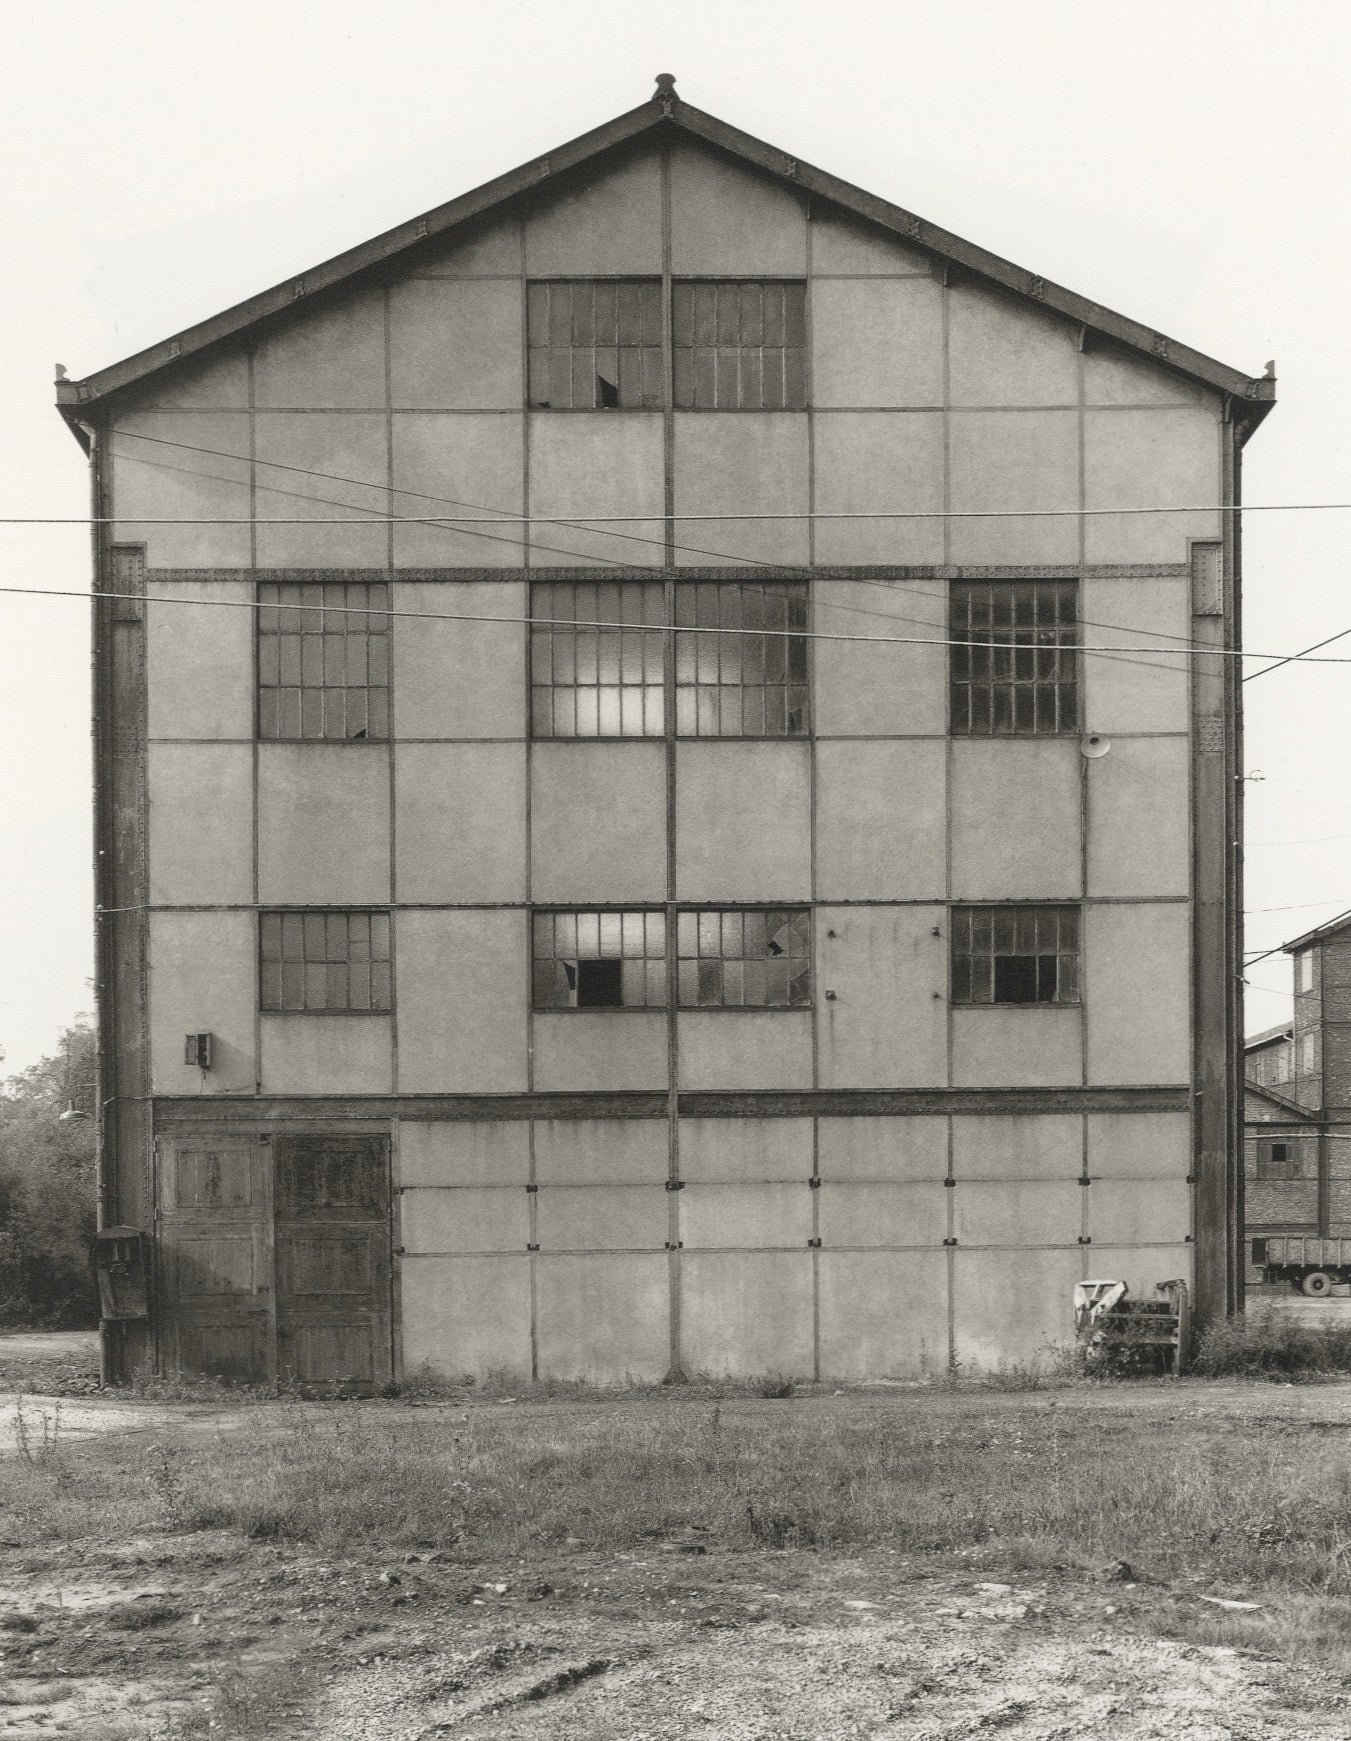 Bernd und Hilla Becher: Fabrikhallen (Factory Buildings/Industrial Facades, Softcover)